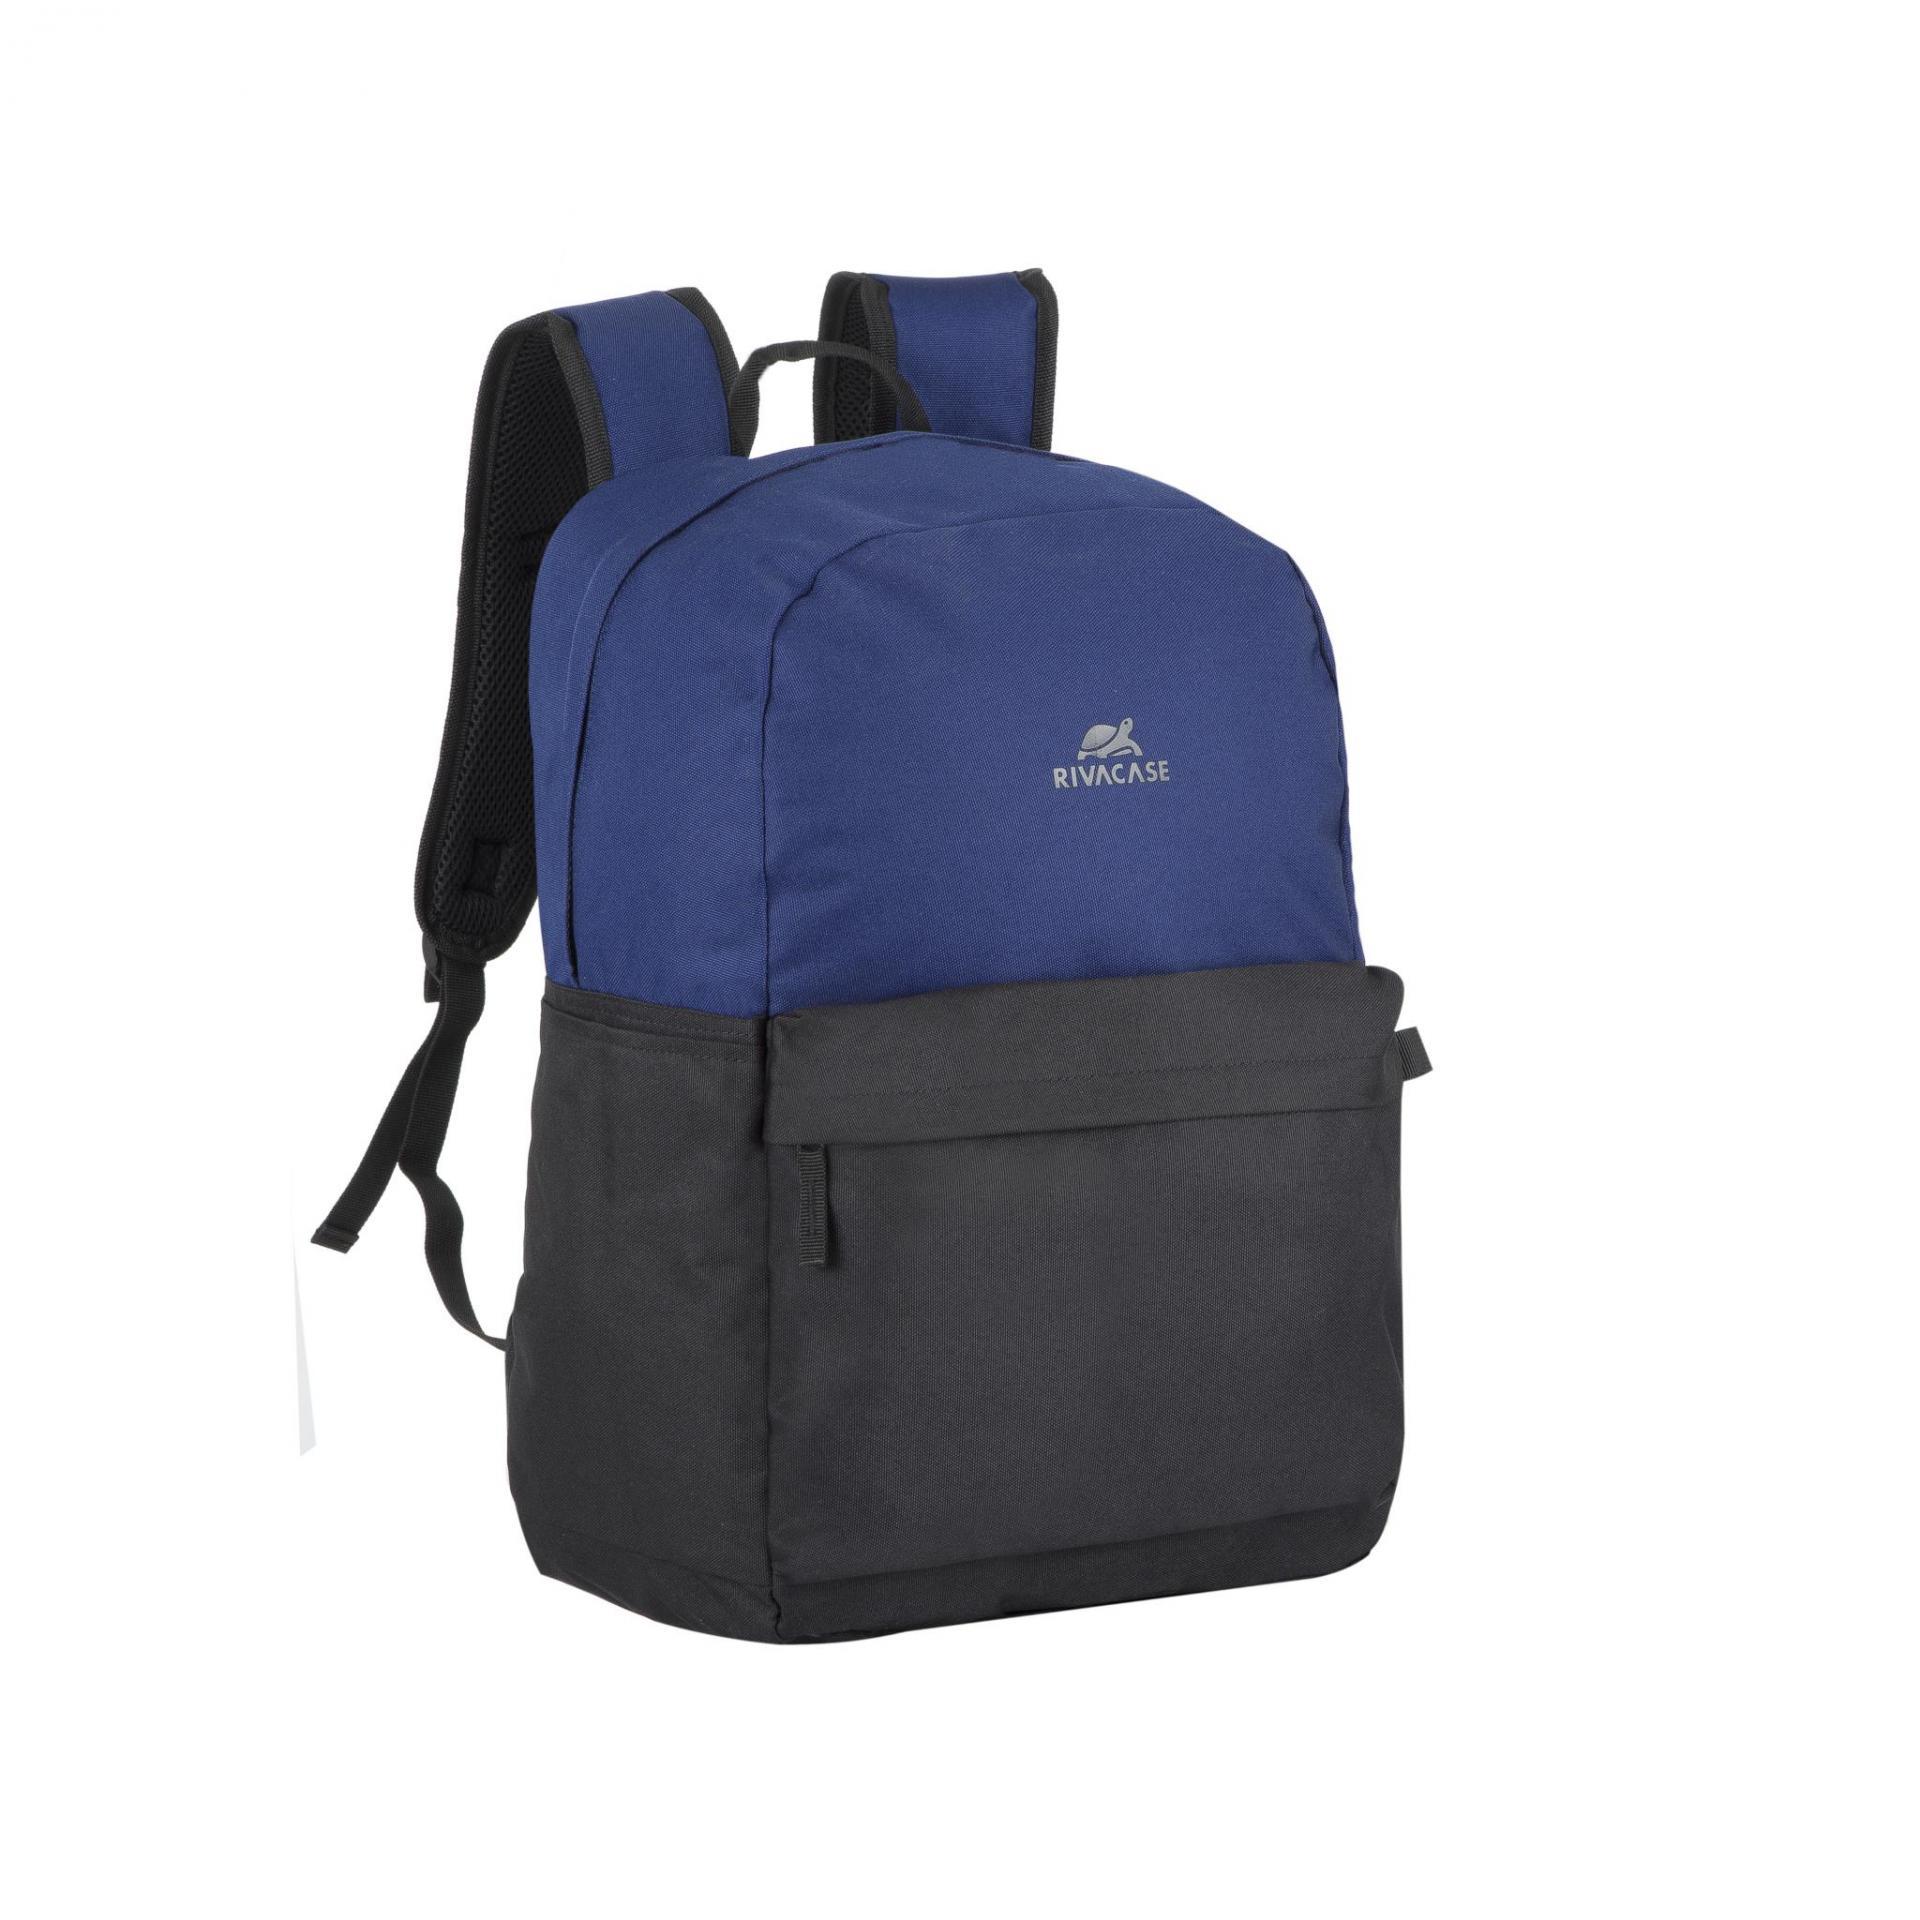 RIVACASE 5560 cobalt blue/black  backpack 15.6